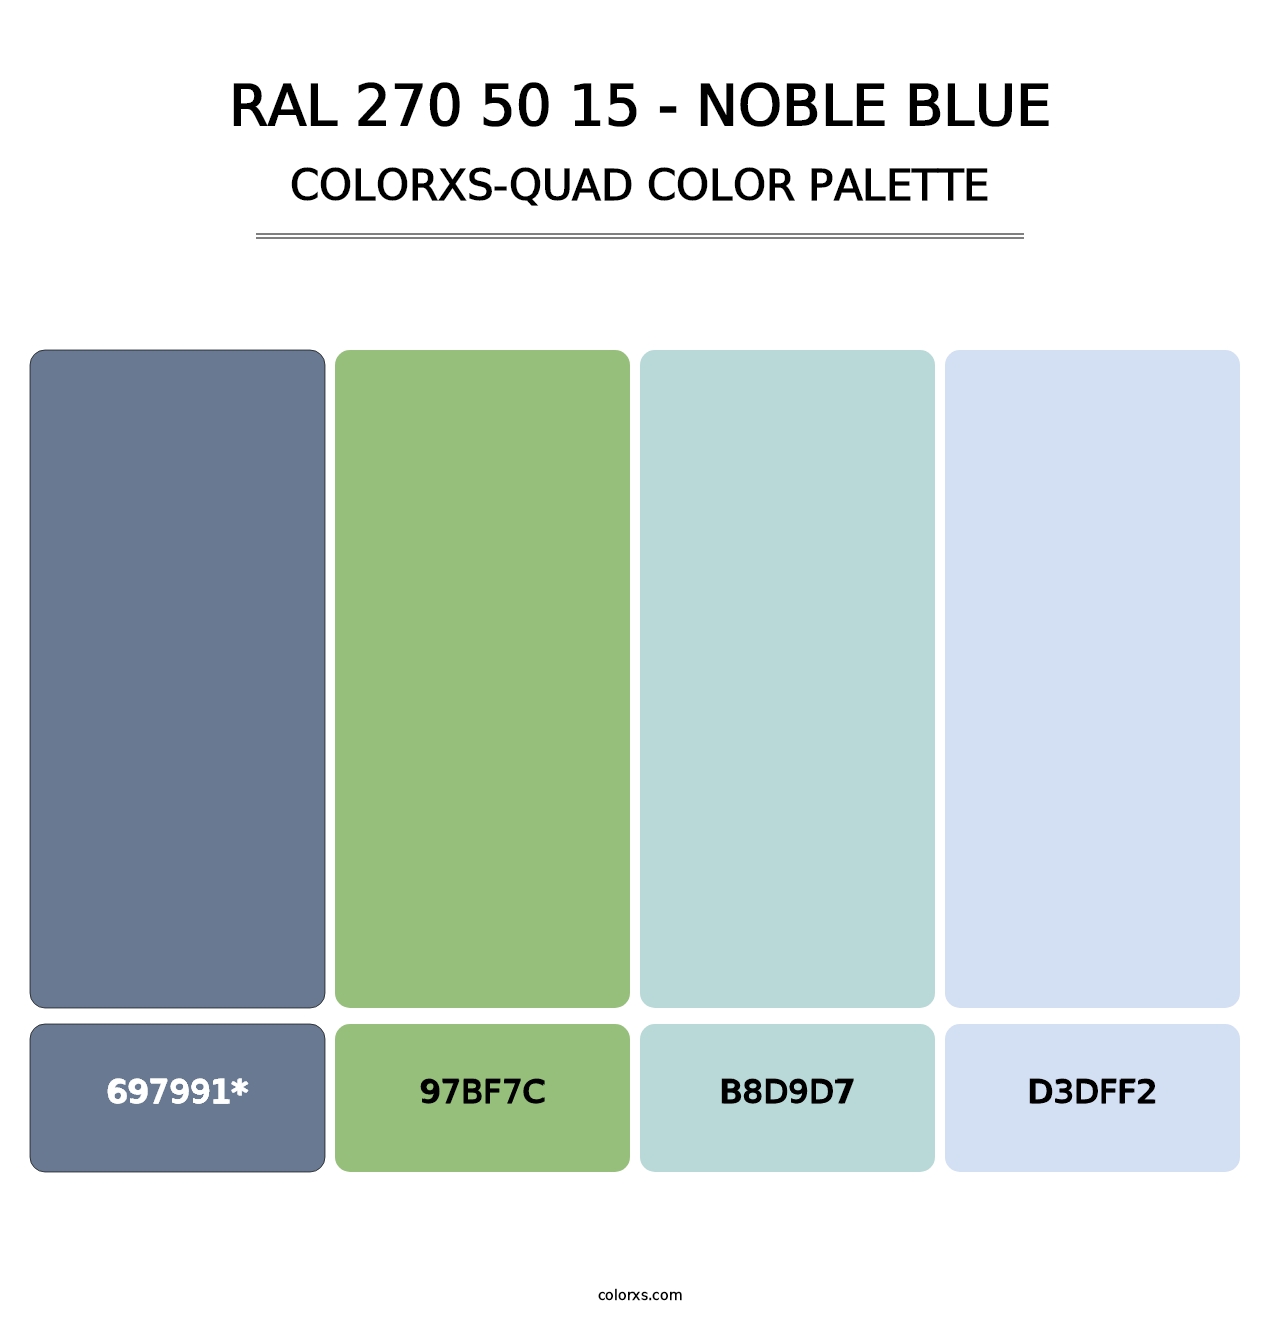 RAL 270 50 15 - Noble Blue - Colorxs Quad Palette